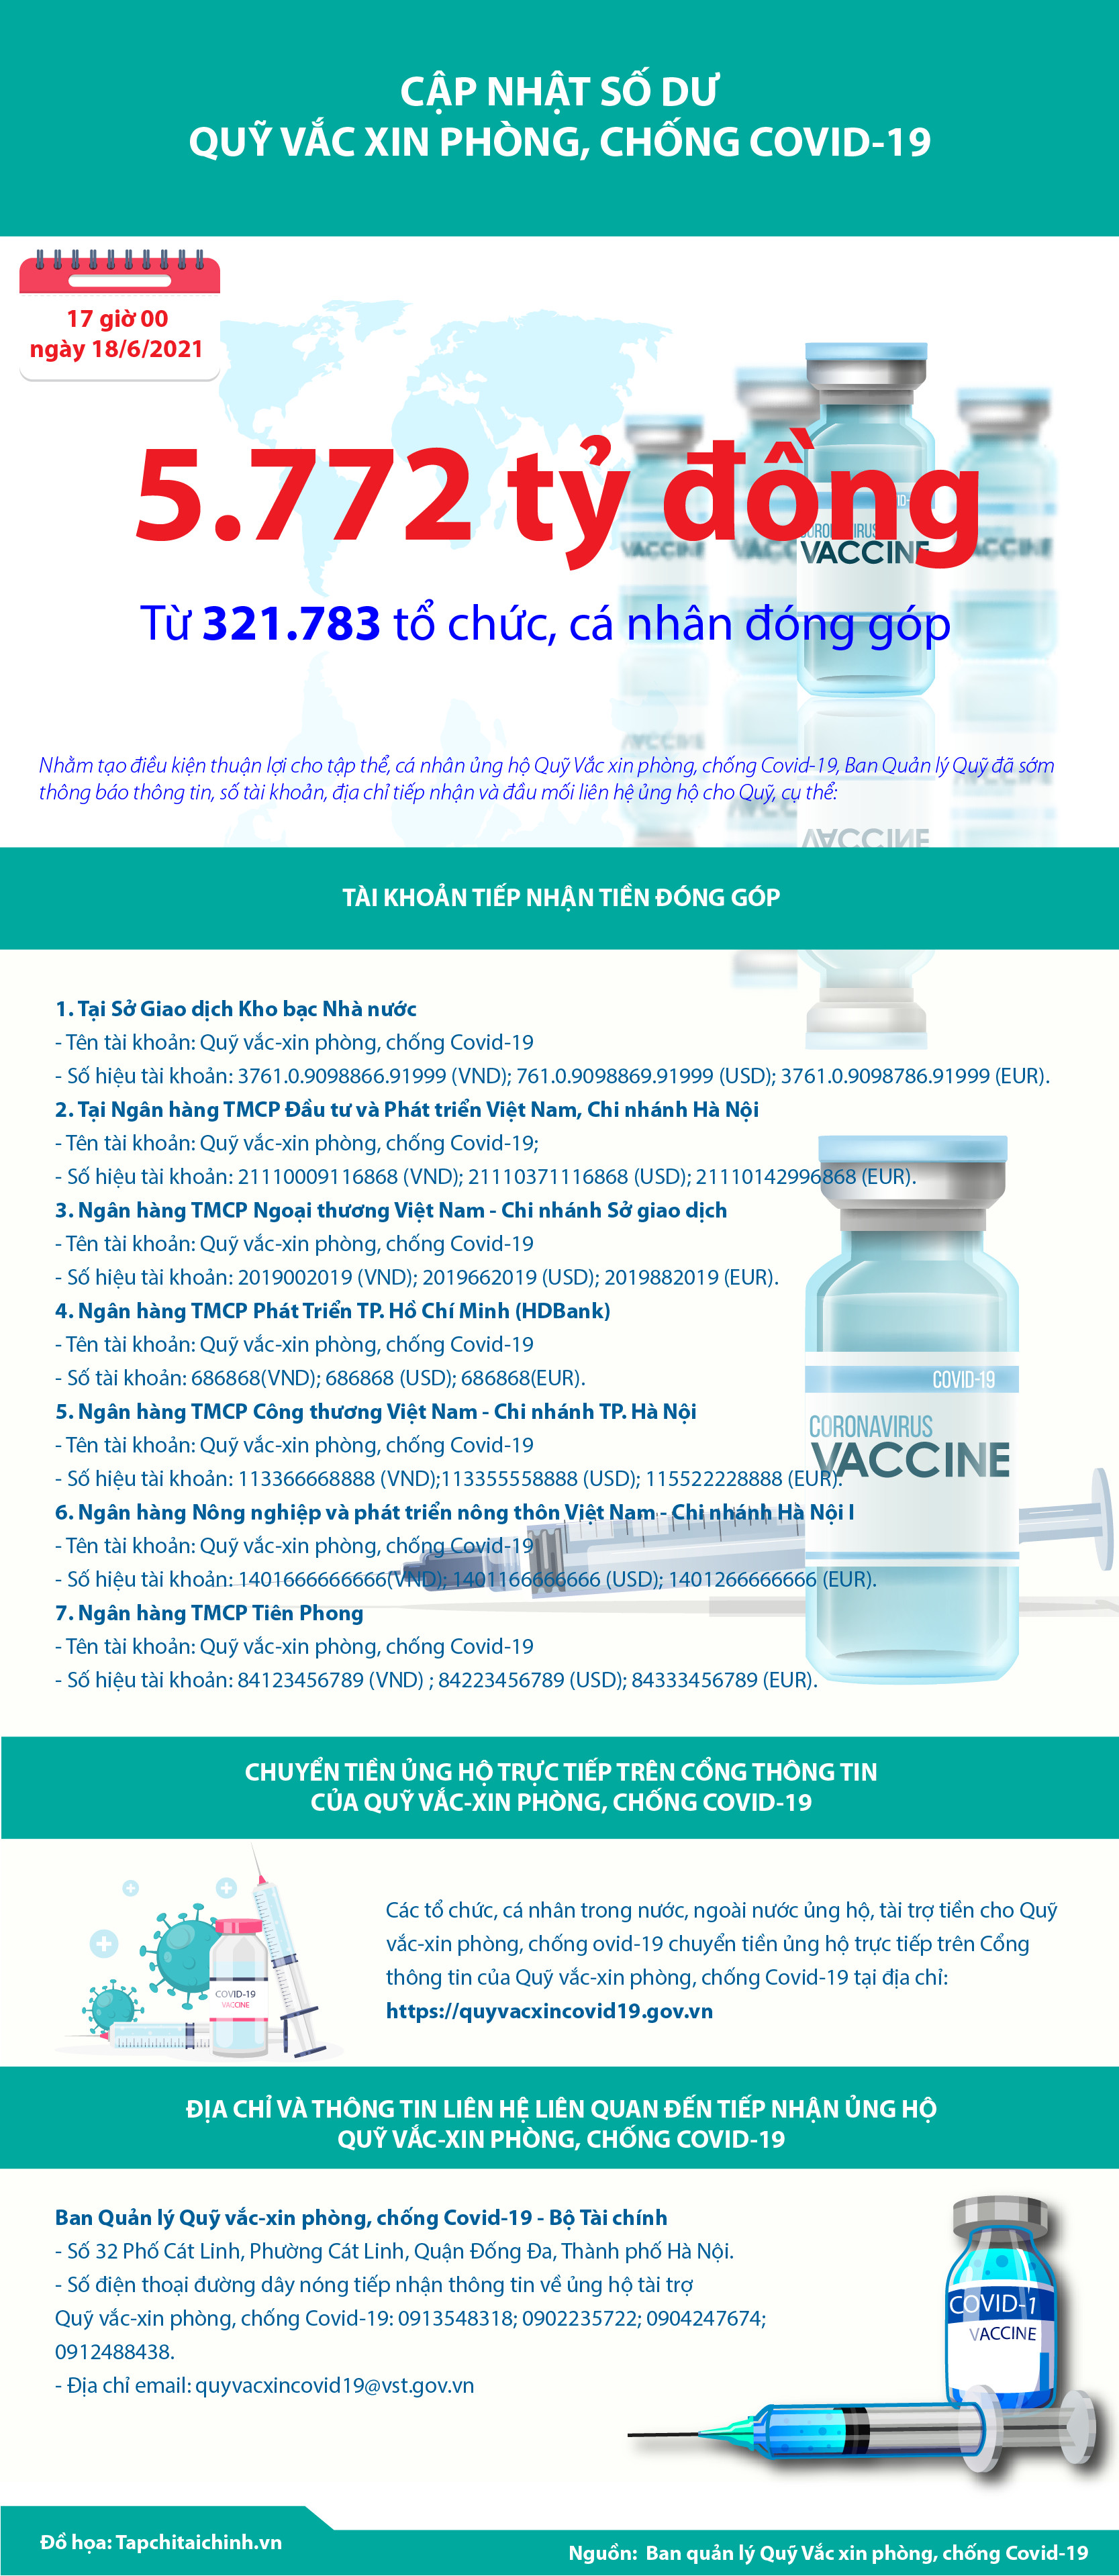 Quỹ Vắc xin phòng, chống Covid-19 đã tiếp nhận ủng hộ 5.772 tỷ đồng - Ảnh 1